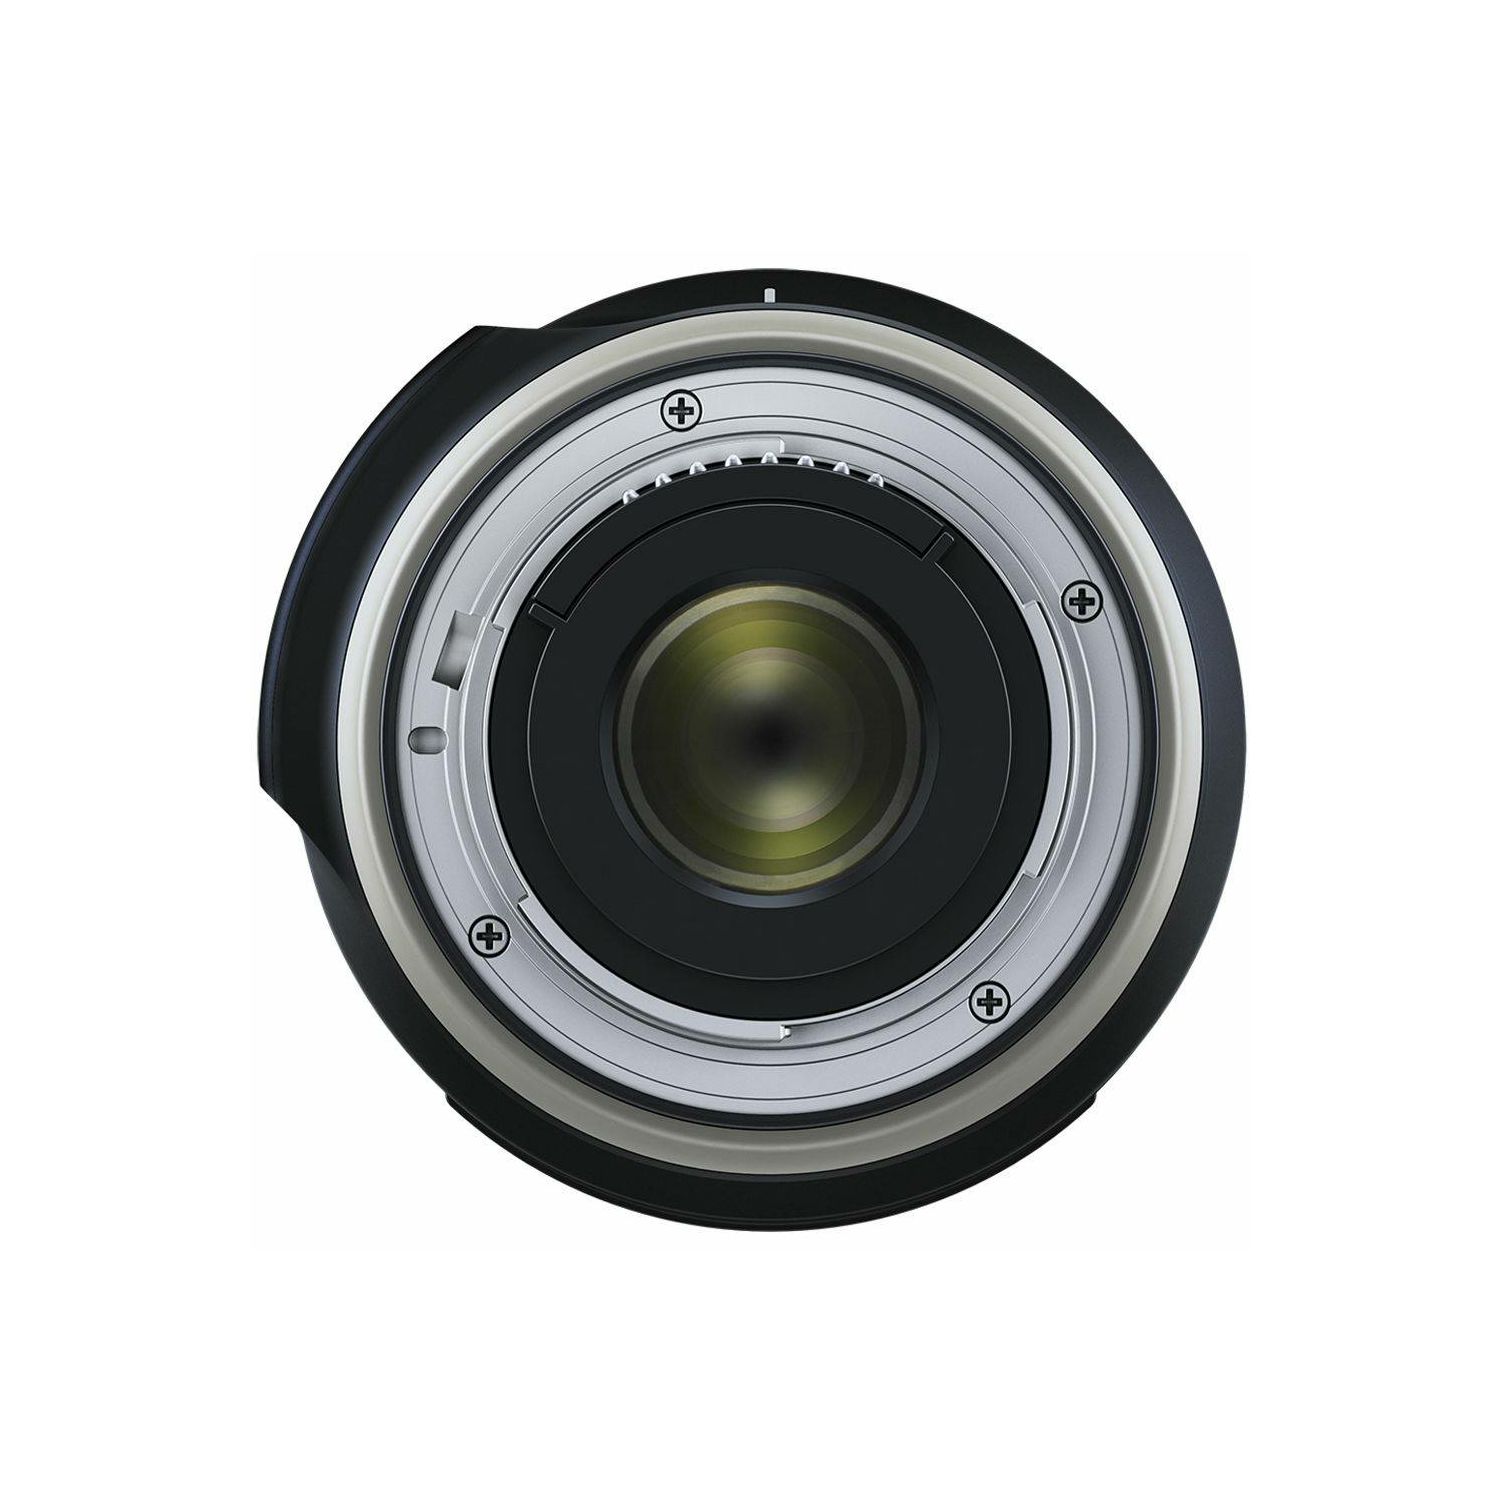 Tamron 10-24mm f/3.5-4.5 Di II VC HLD Ultra širokokutni objektiv za Nikon DX (B023N)